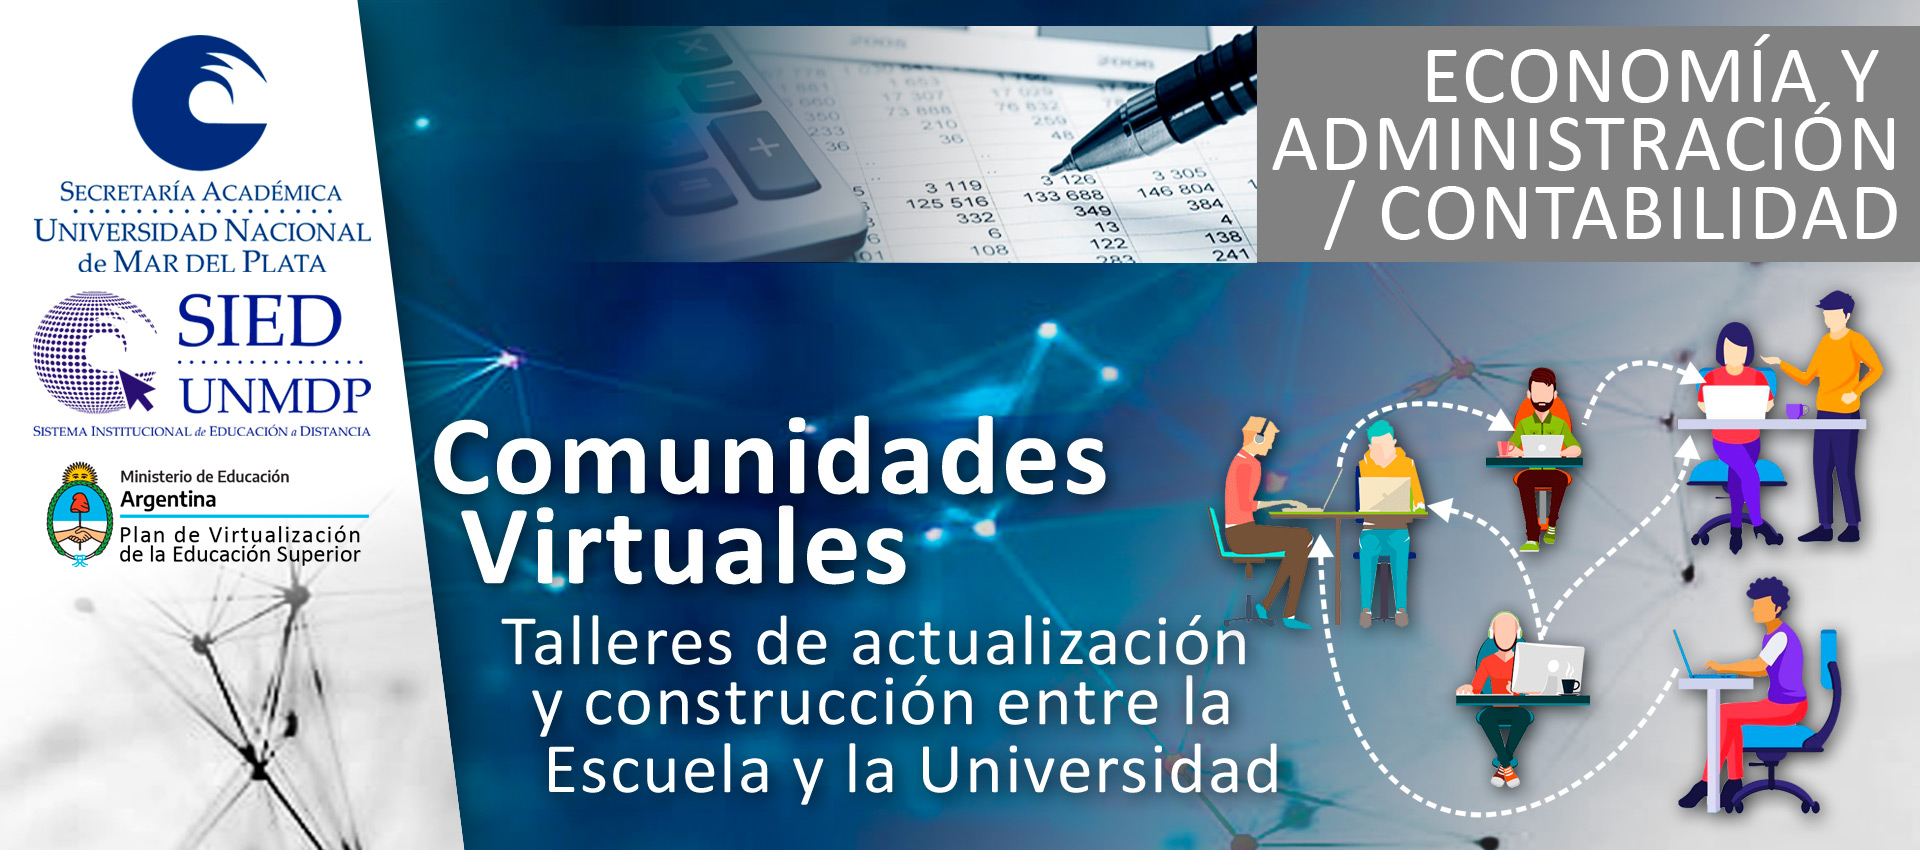 Imagen de portada del taller Economía y administración/contabilidad